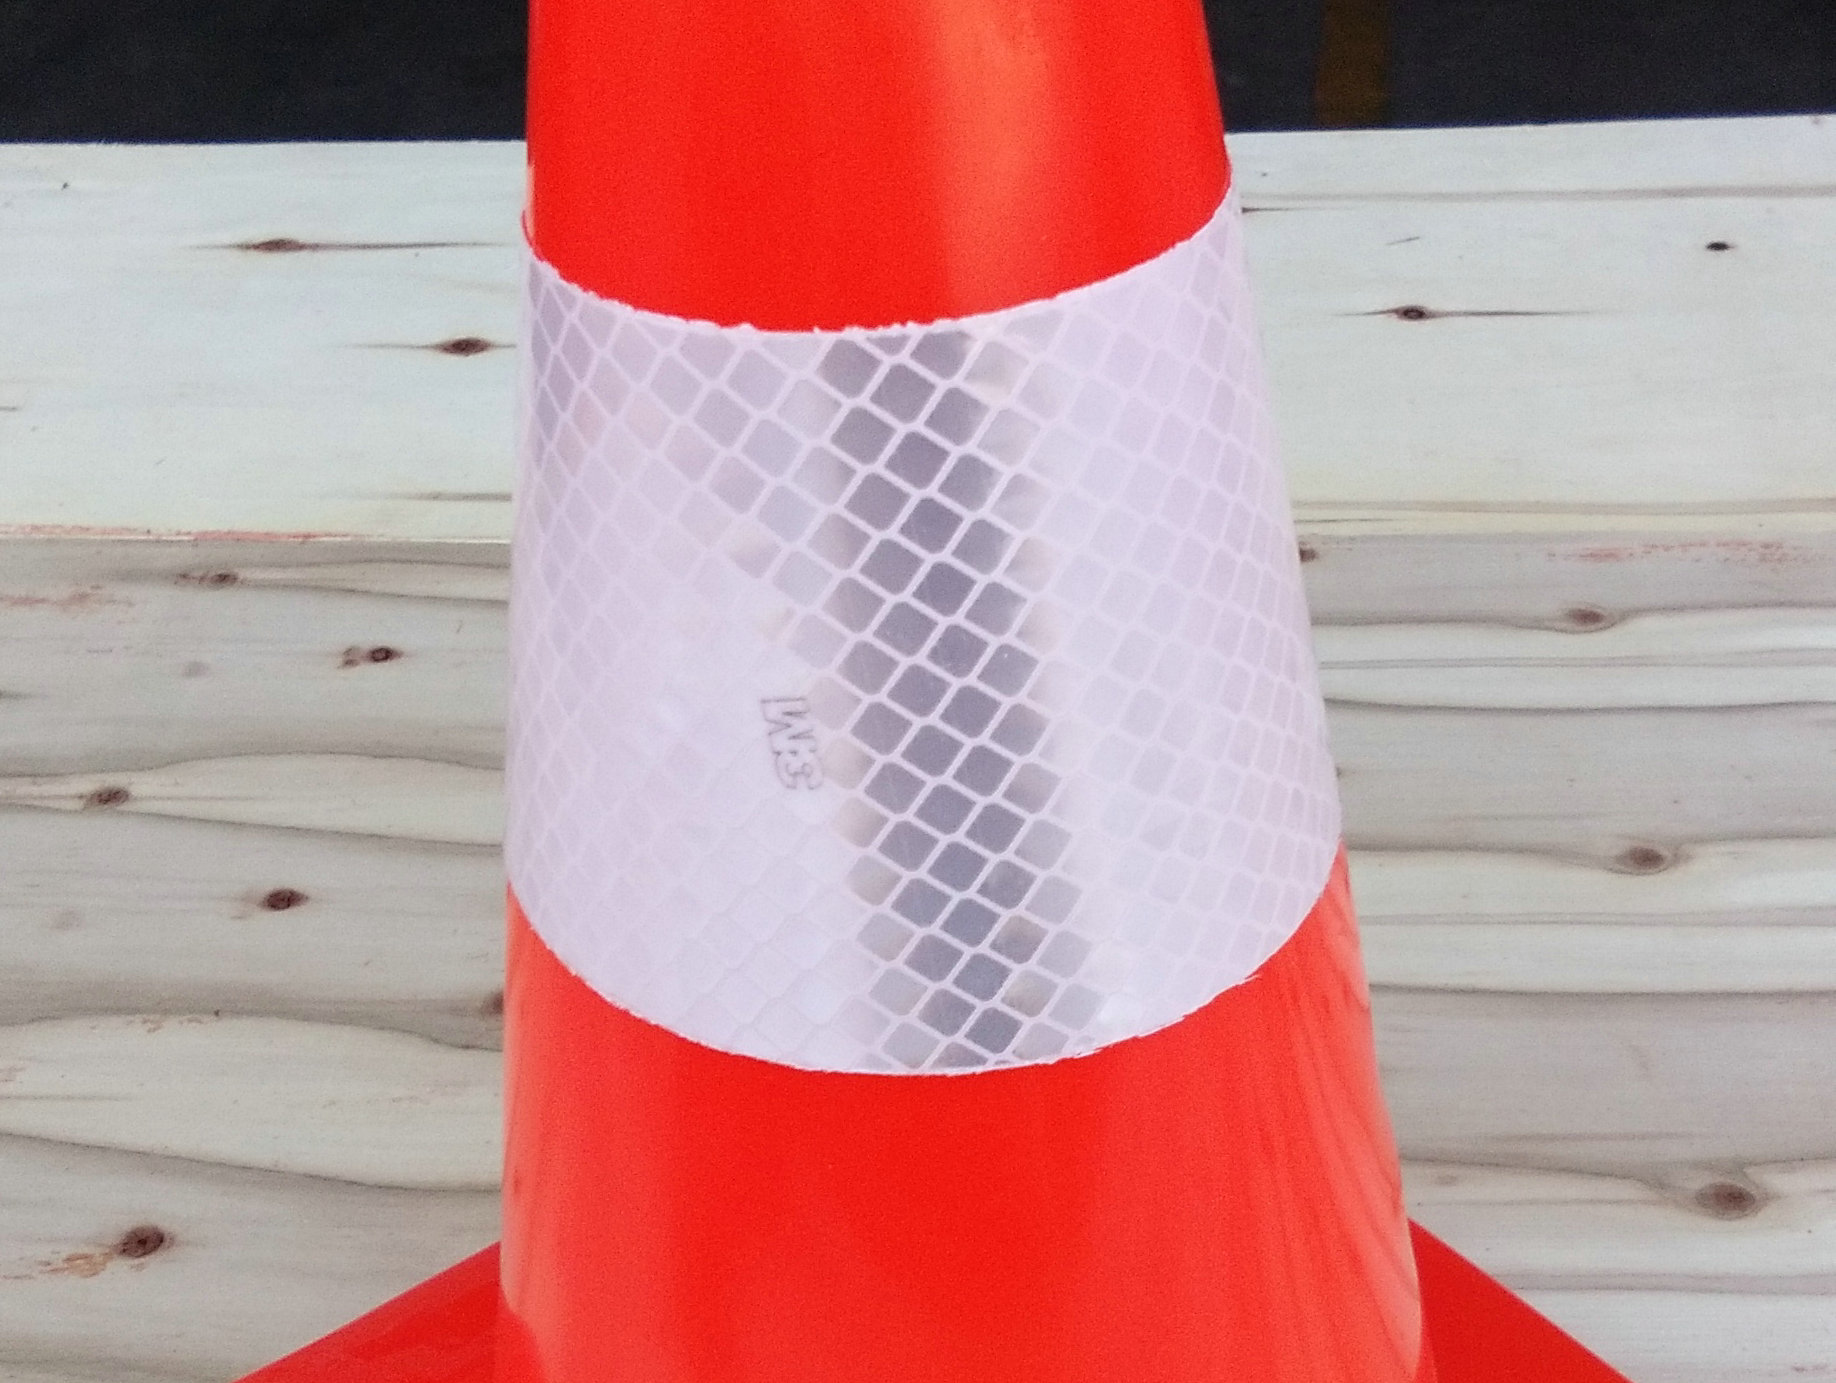 30cm 0.6 kg All Orange PVC Cone